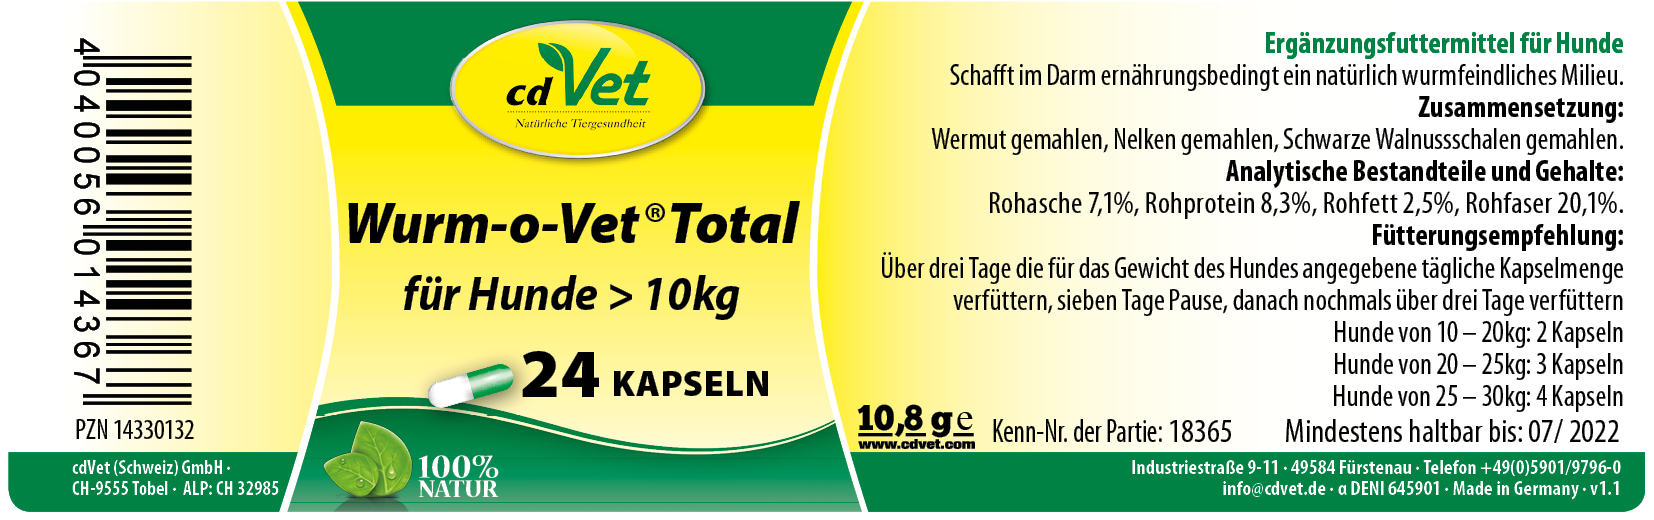 cdVet Wurm-o-Vet Total für Hunde > 10kg